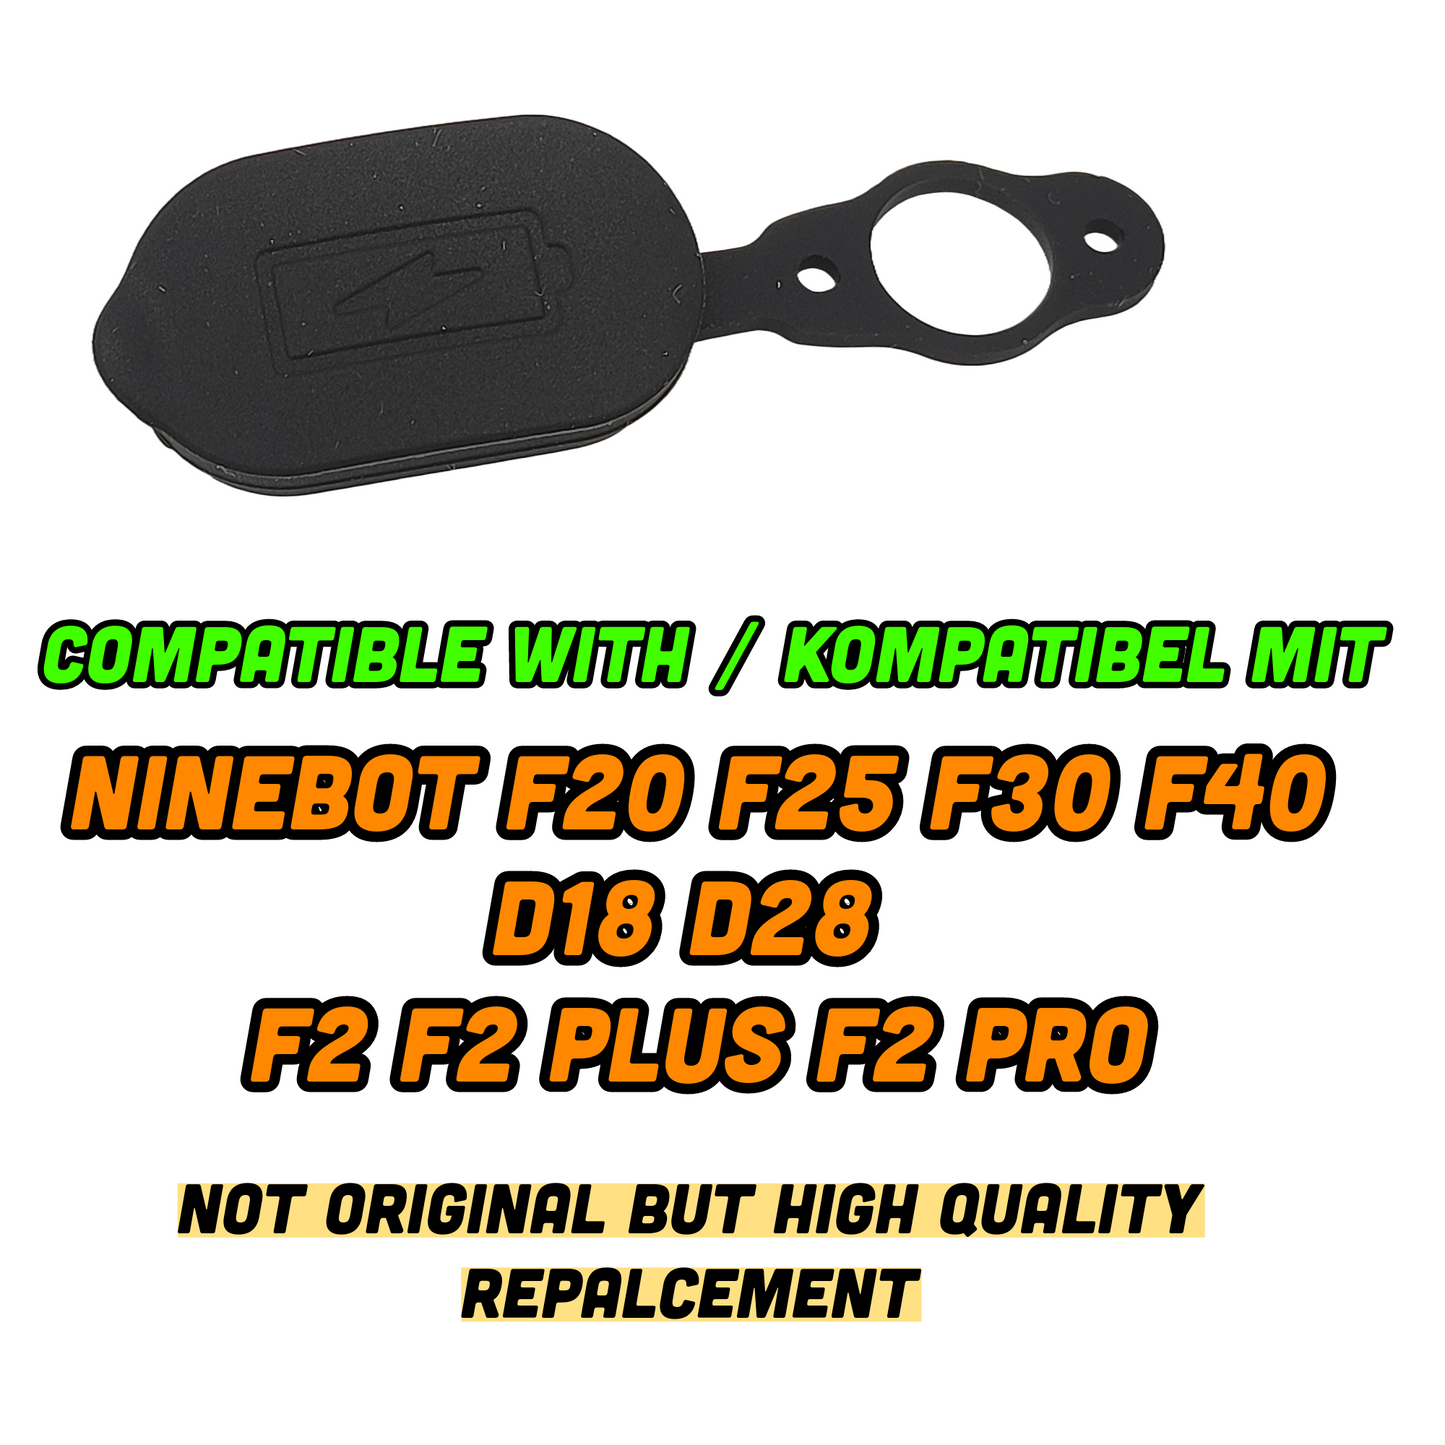 Ninebot F20 F25 F30 F40 Kupuj gumową osłonę portu na rynku wtórnym